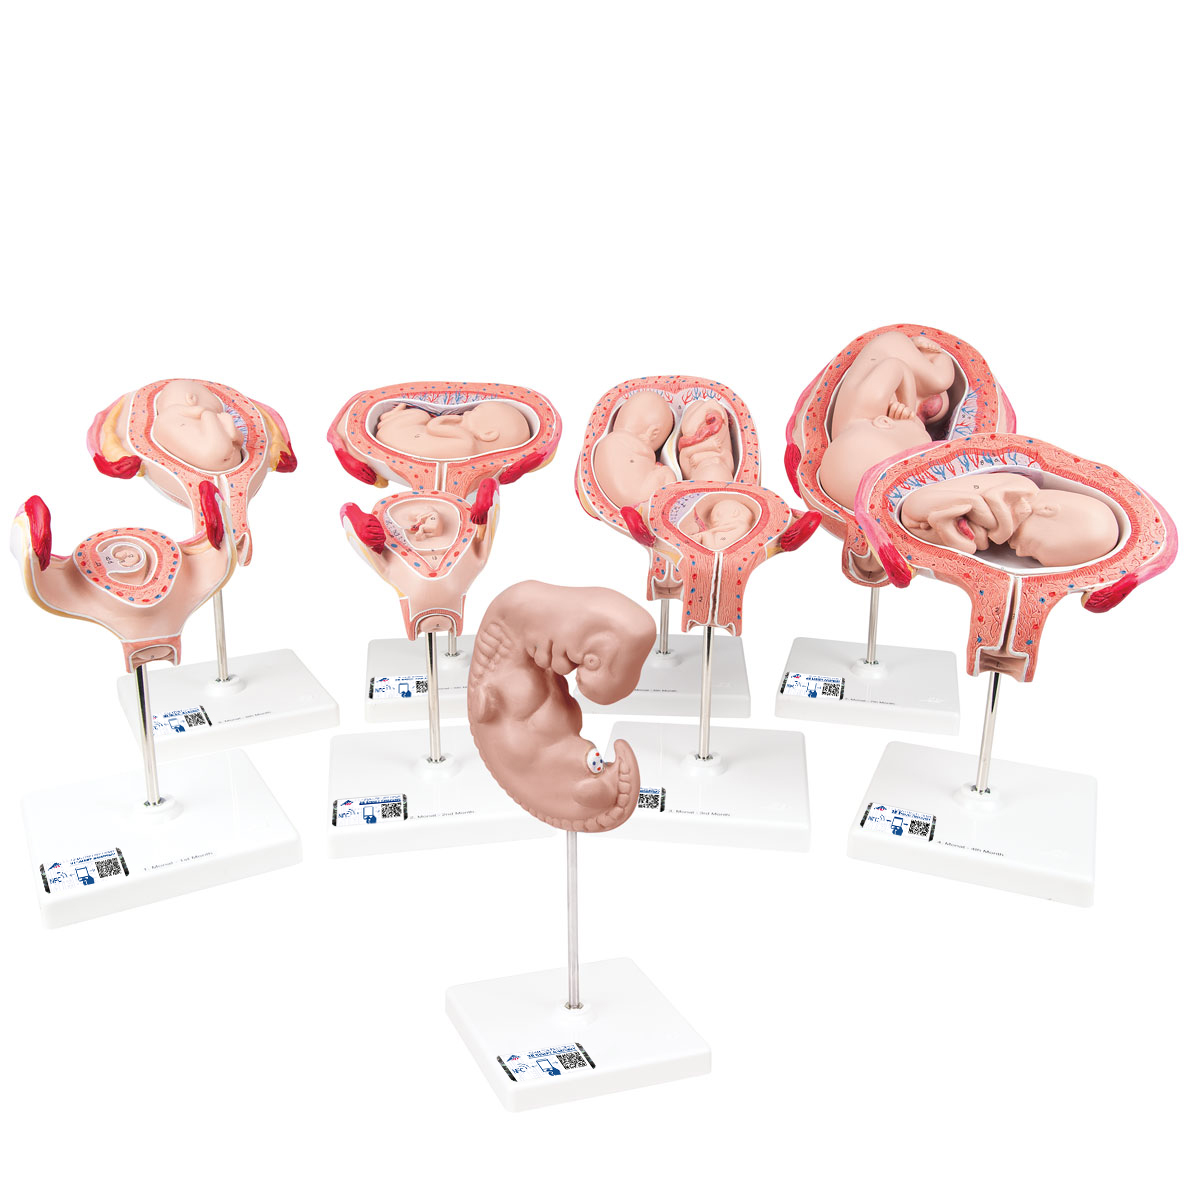 Schwangerschaftsmodell Serie, 9 Modelle - 3B Smart Anatomy, Bestellnummer 1018628, L11, 3B Scientific